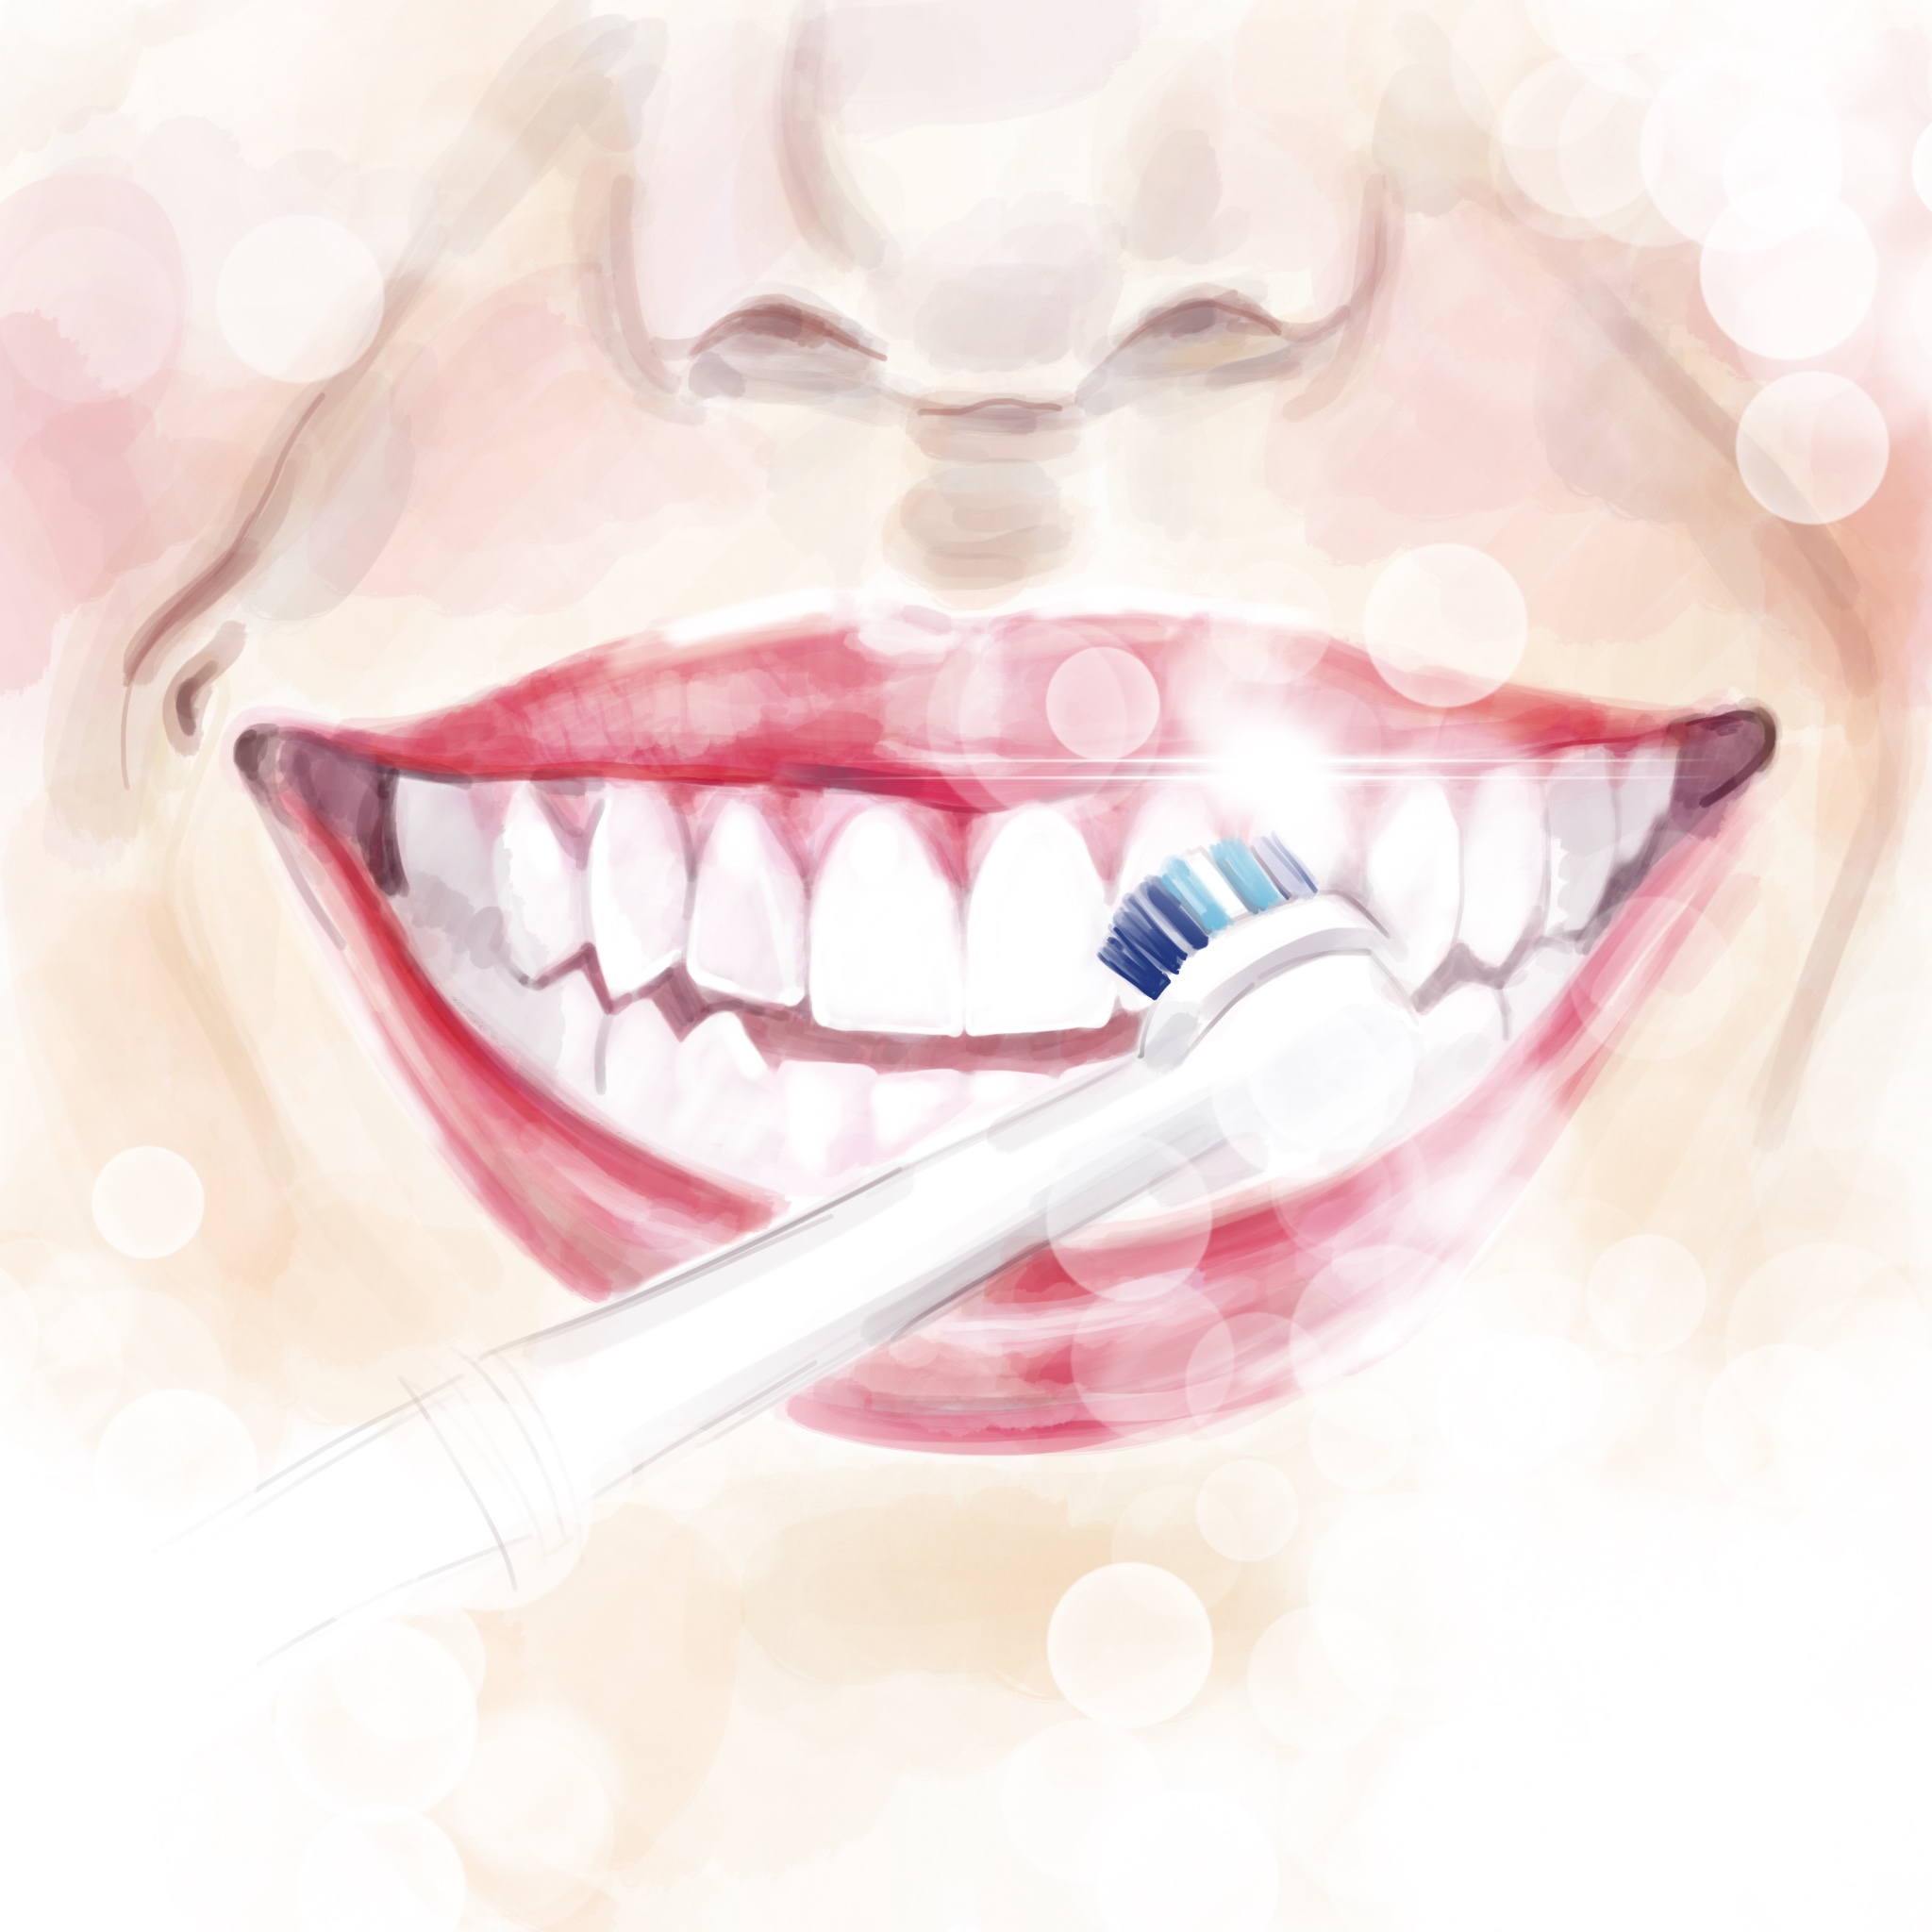 Действительно ли отбеливающие зубные пасты отбеливают?